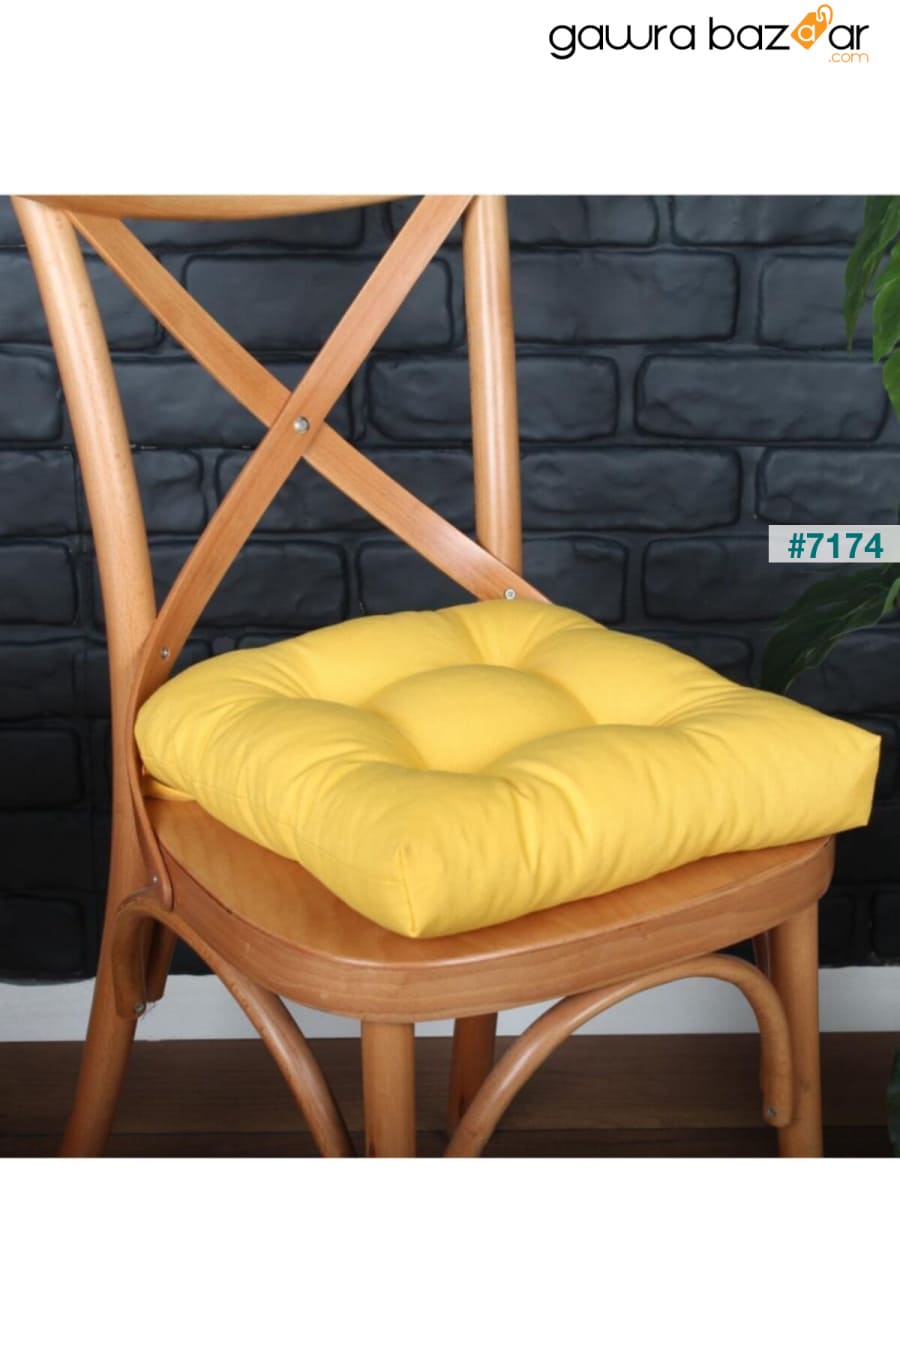 وسادة كرسي صفراء Pofidik الذهبية الخاصة مخيط 40x40 سم ALTINPAMUK 1